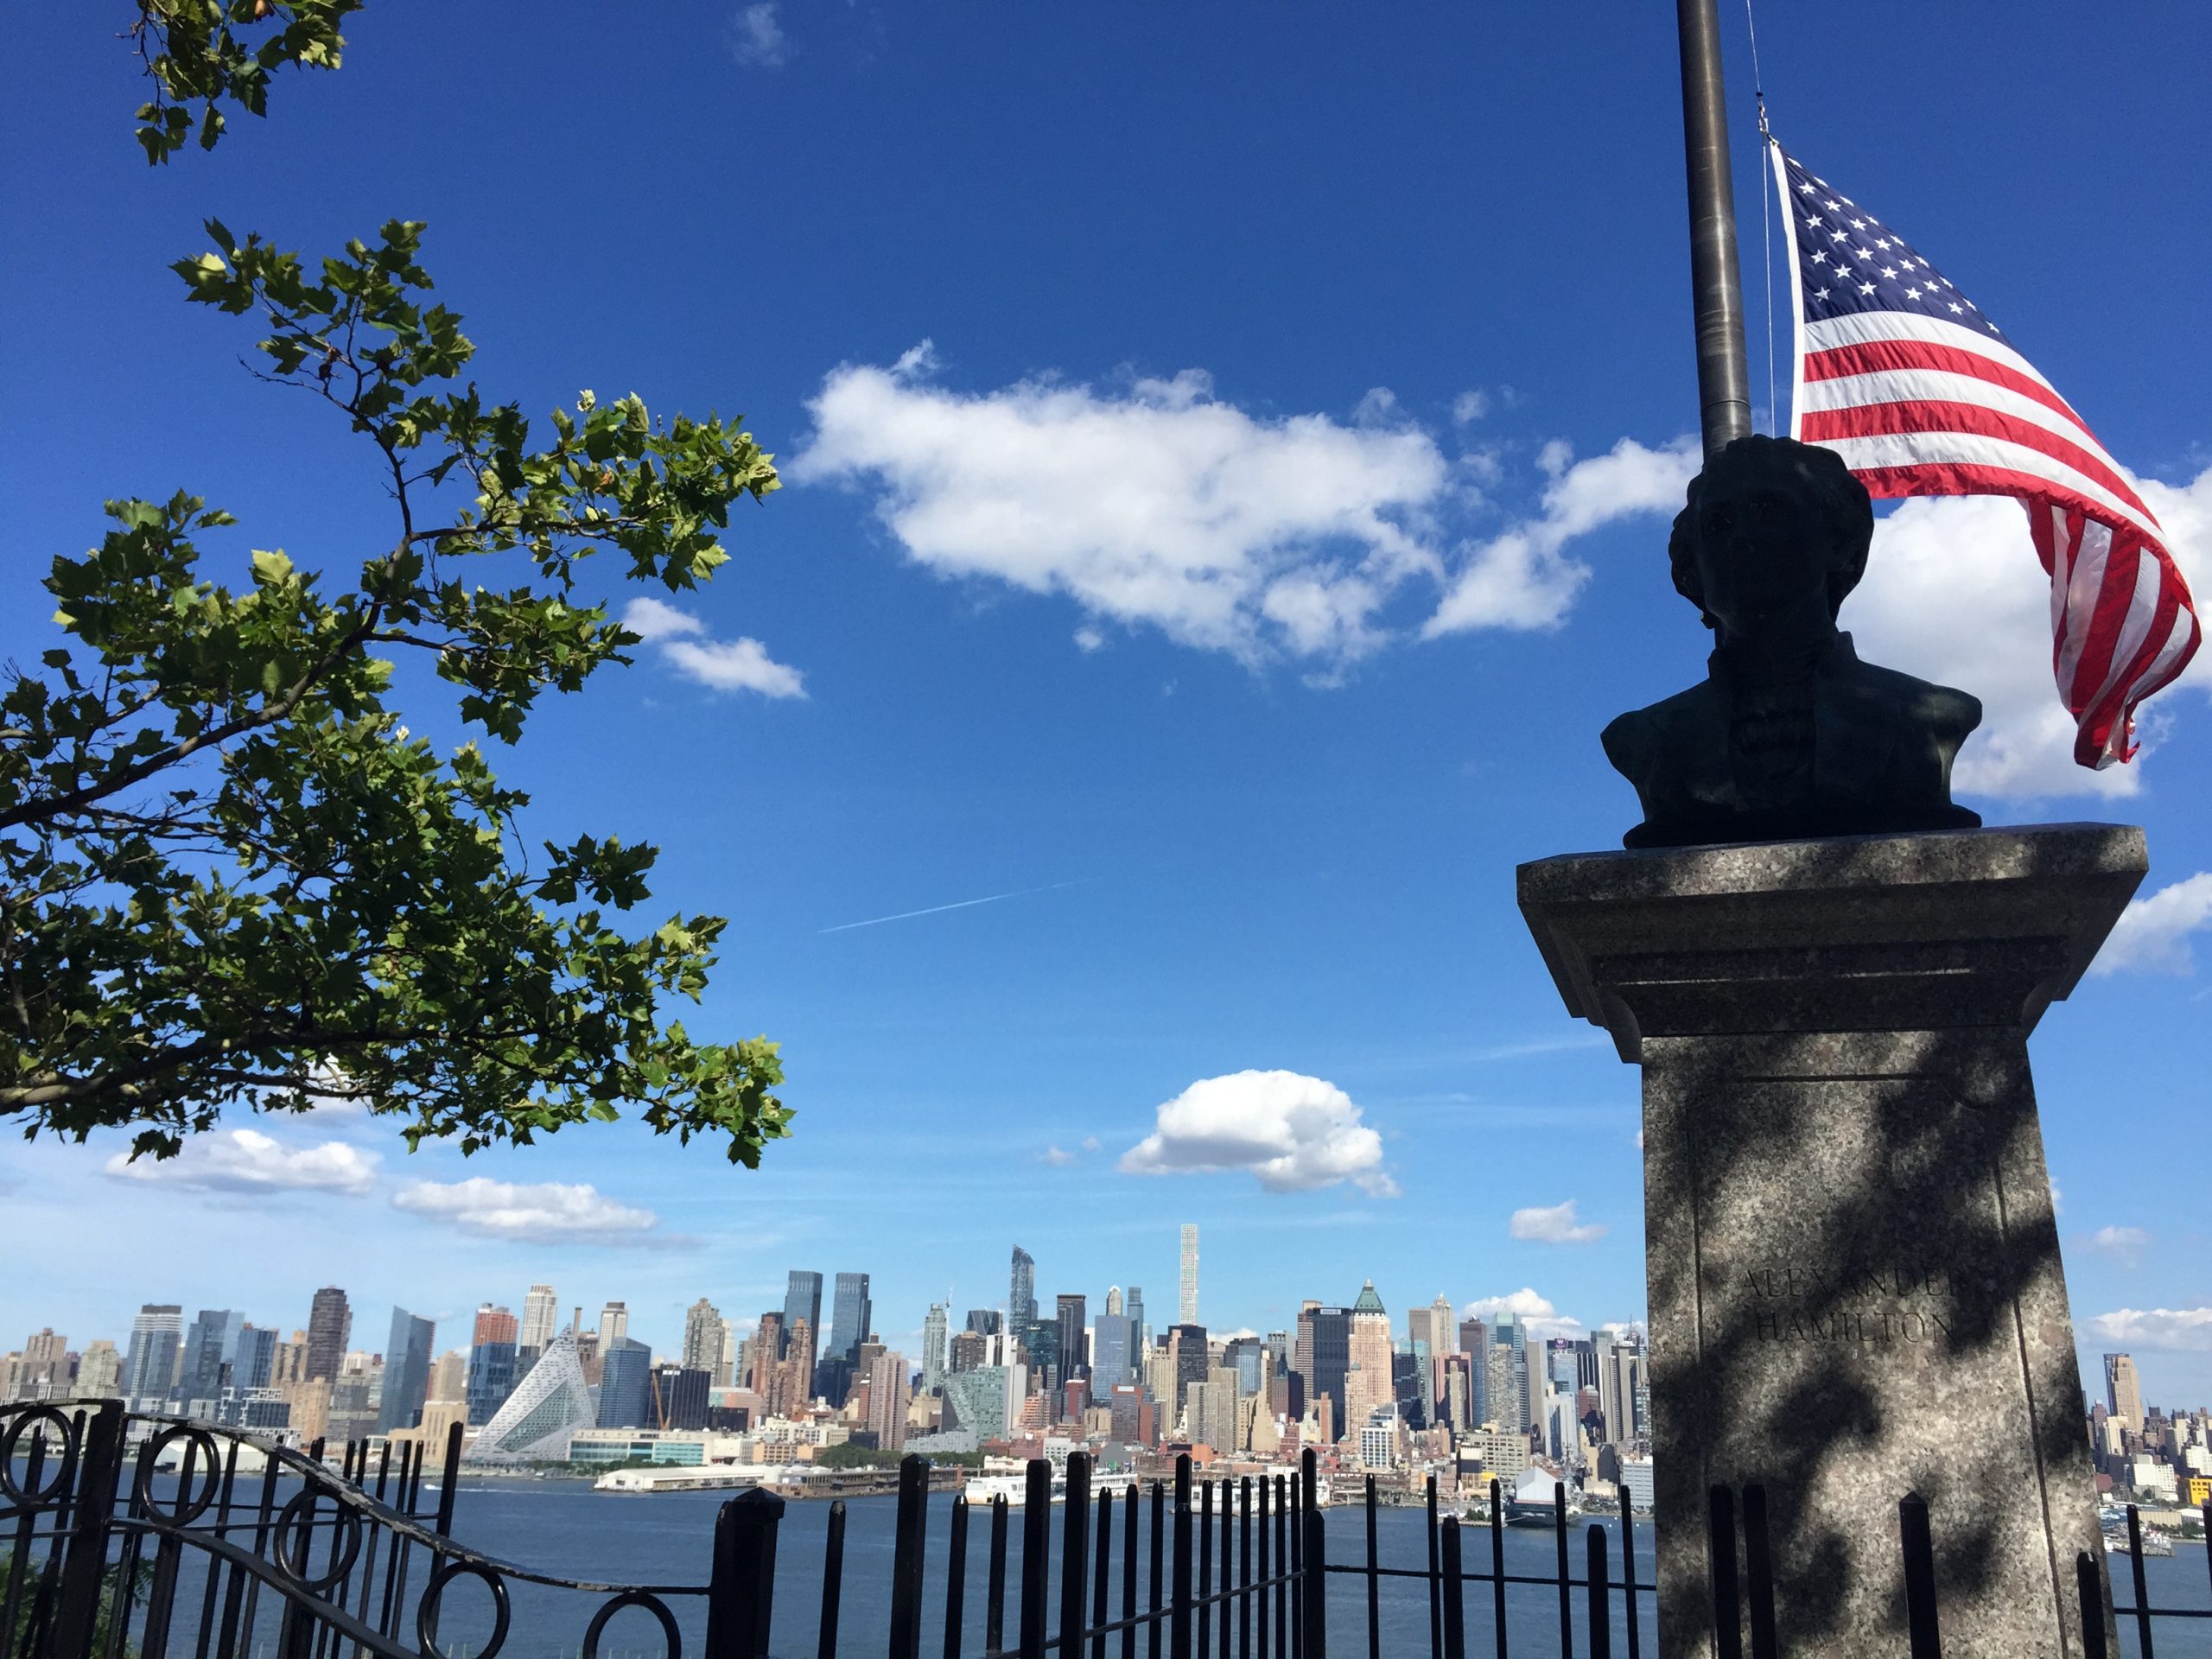 Image of the Hudson river and NY skyline forom the historic Hamilton Park in Jersey City NJ